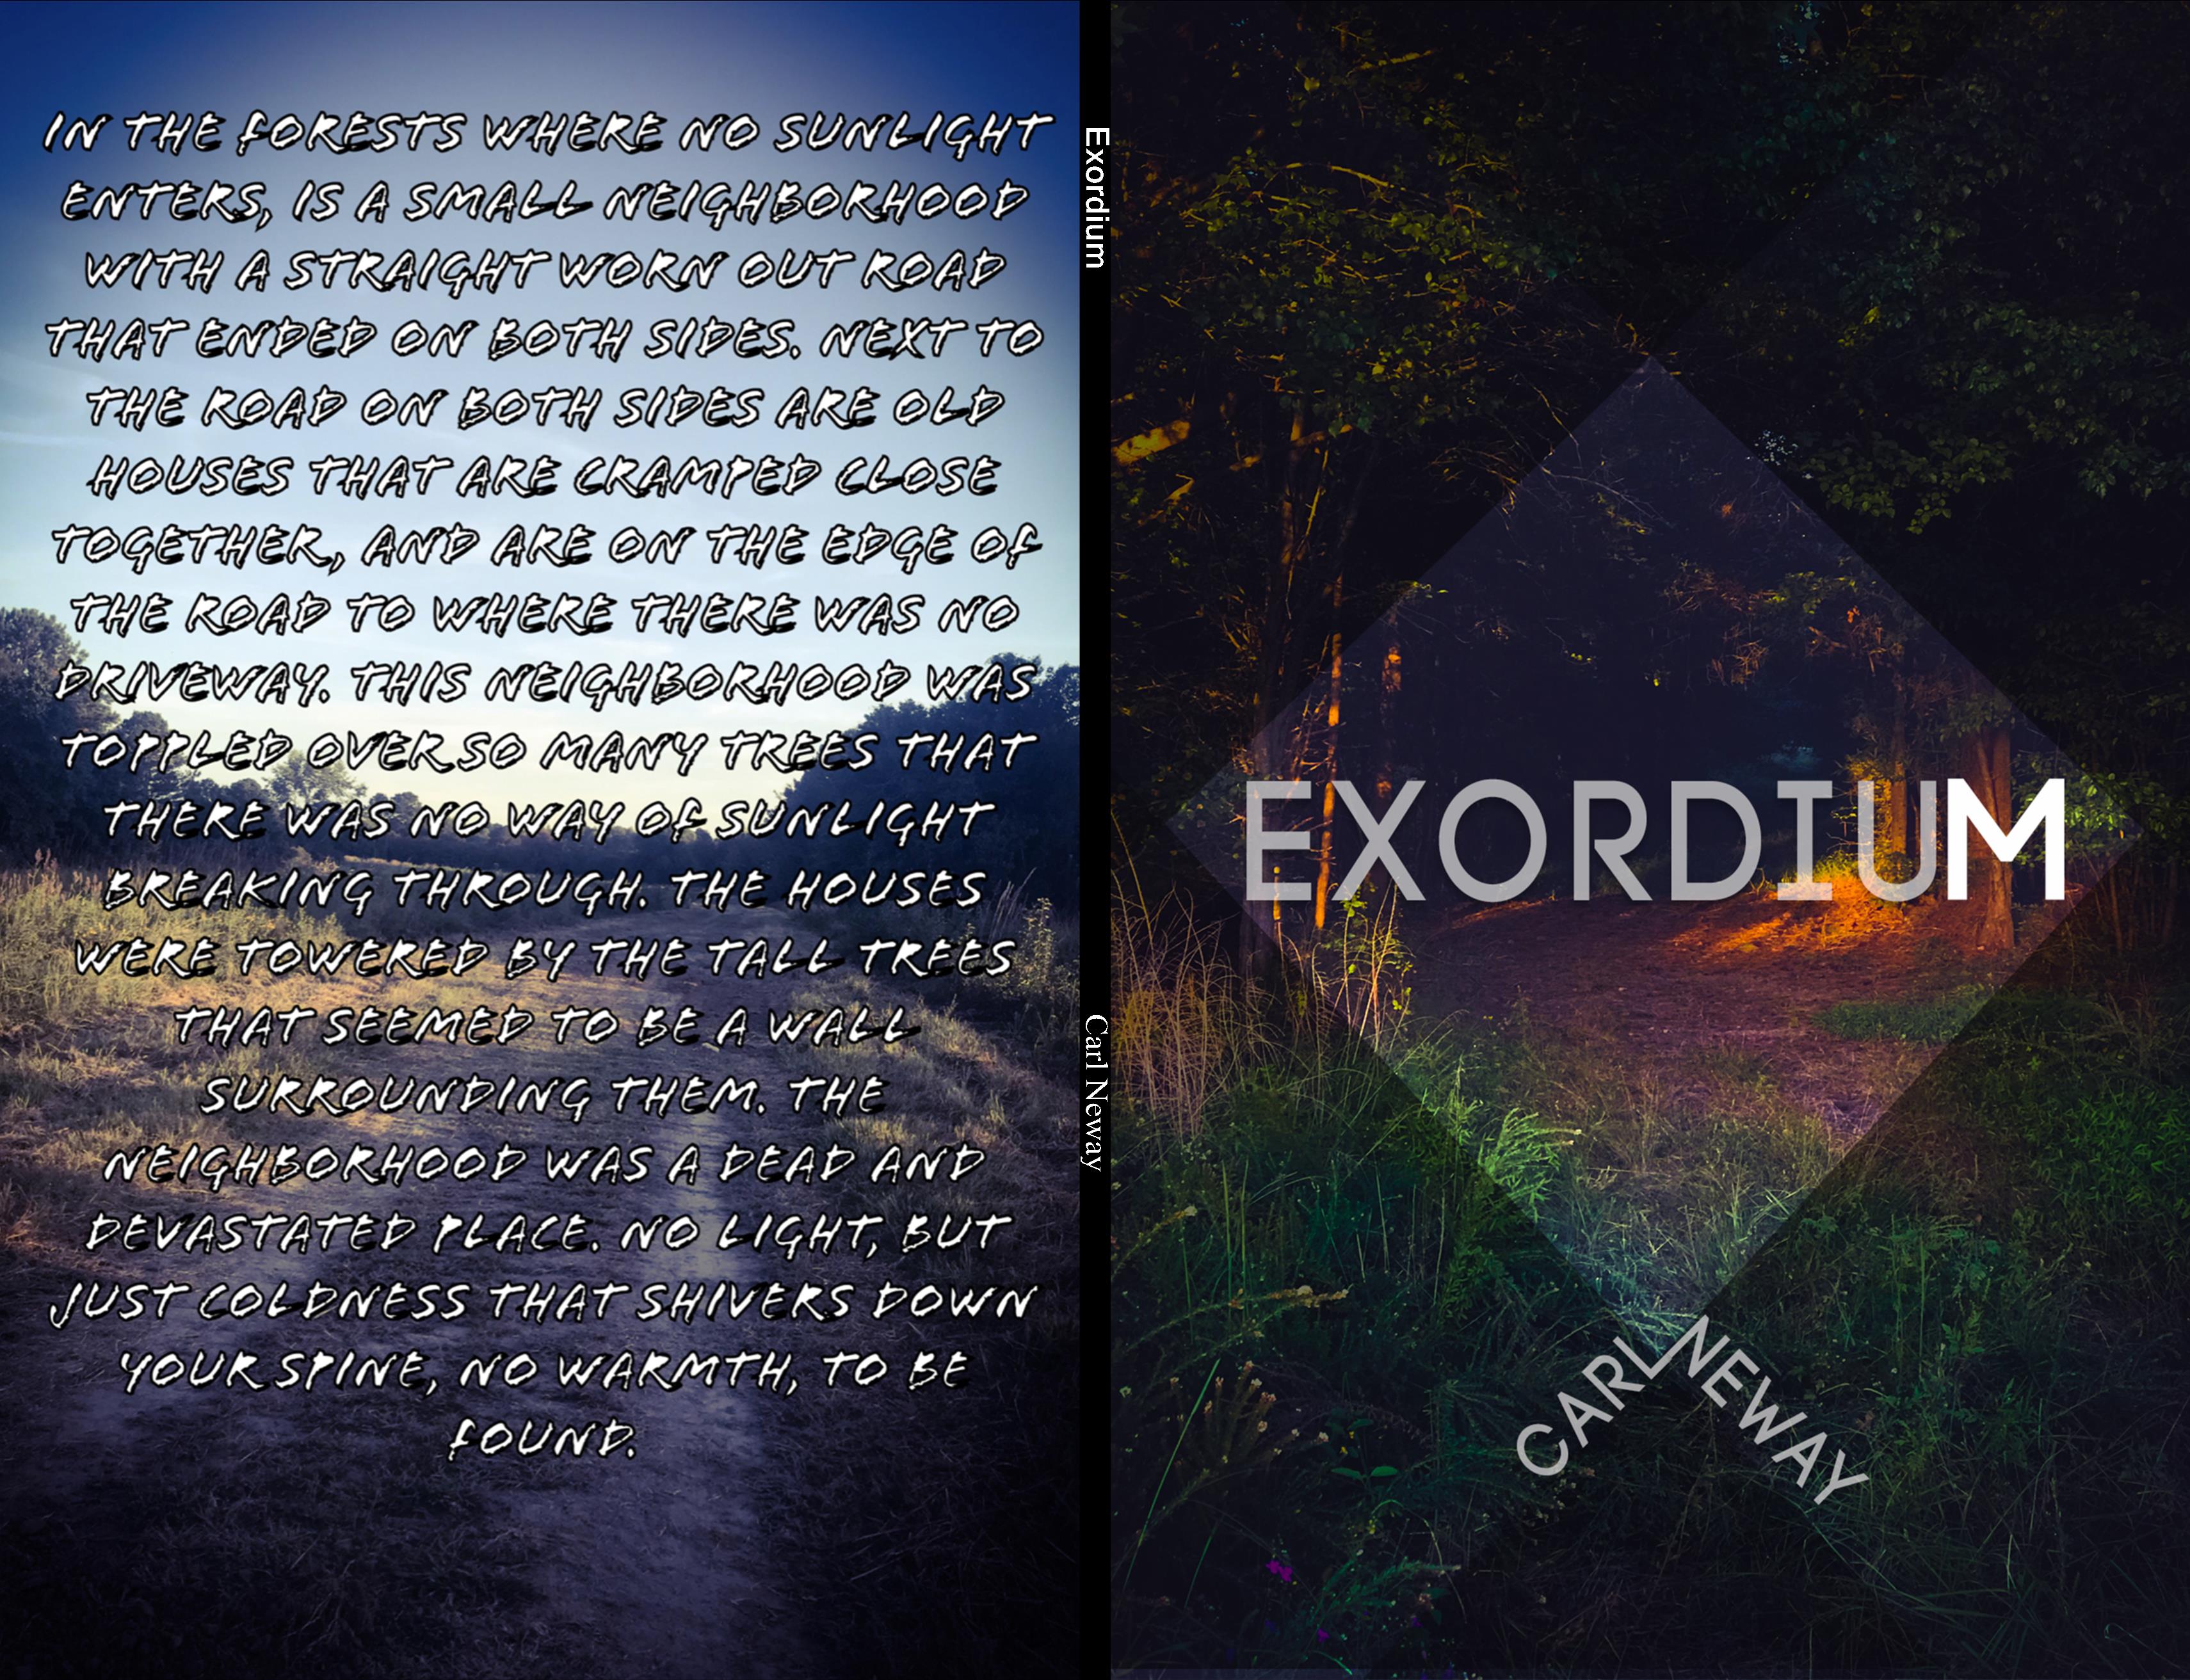 Exordium  cover image